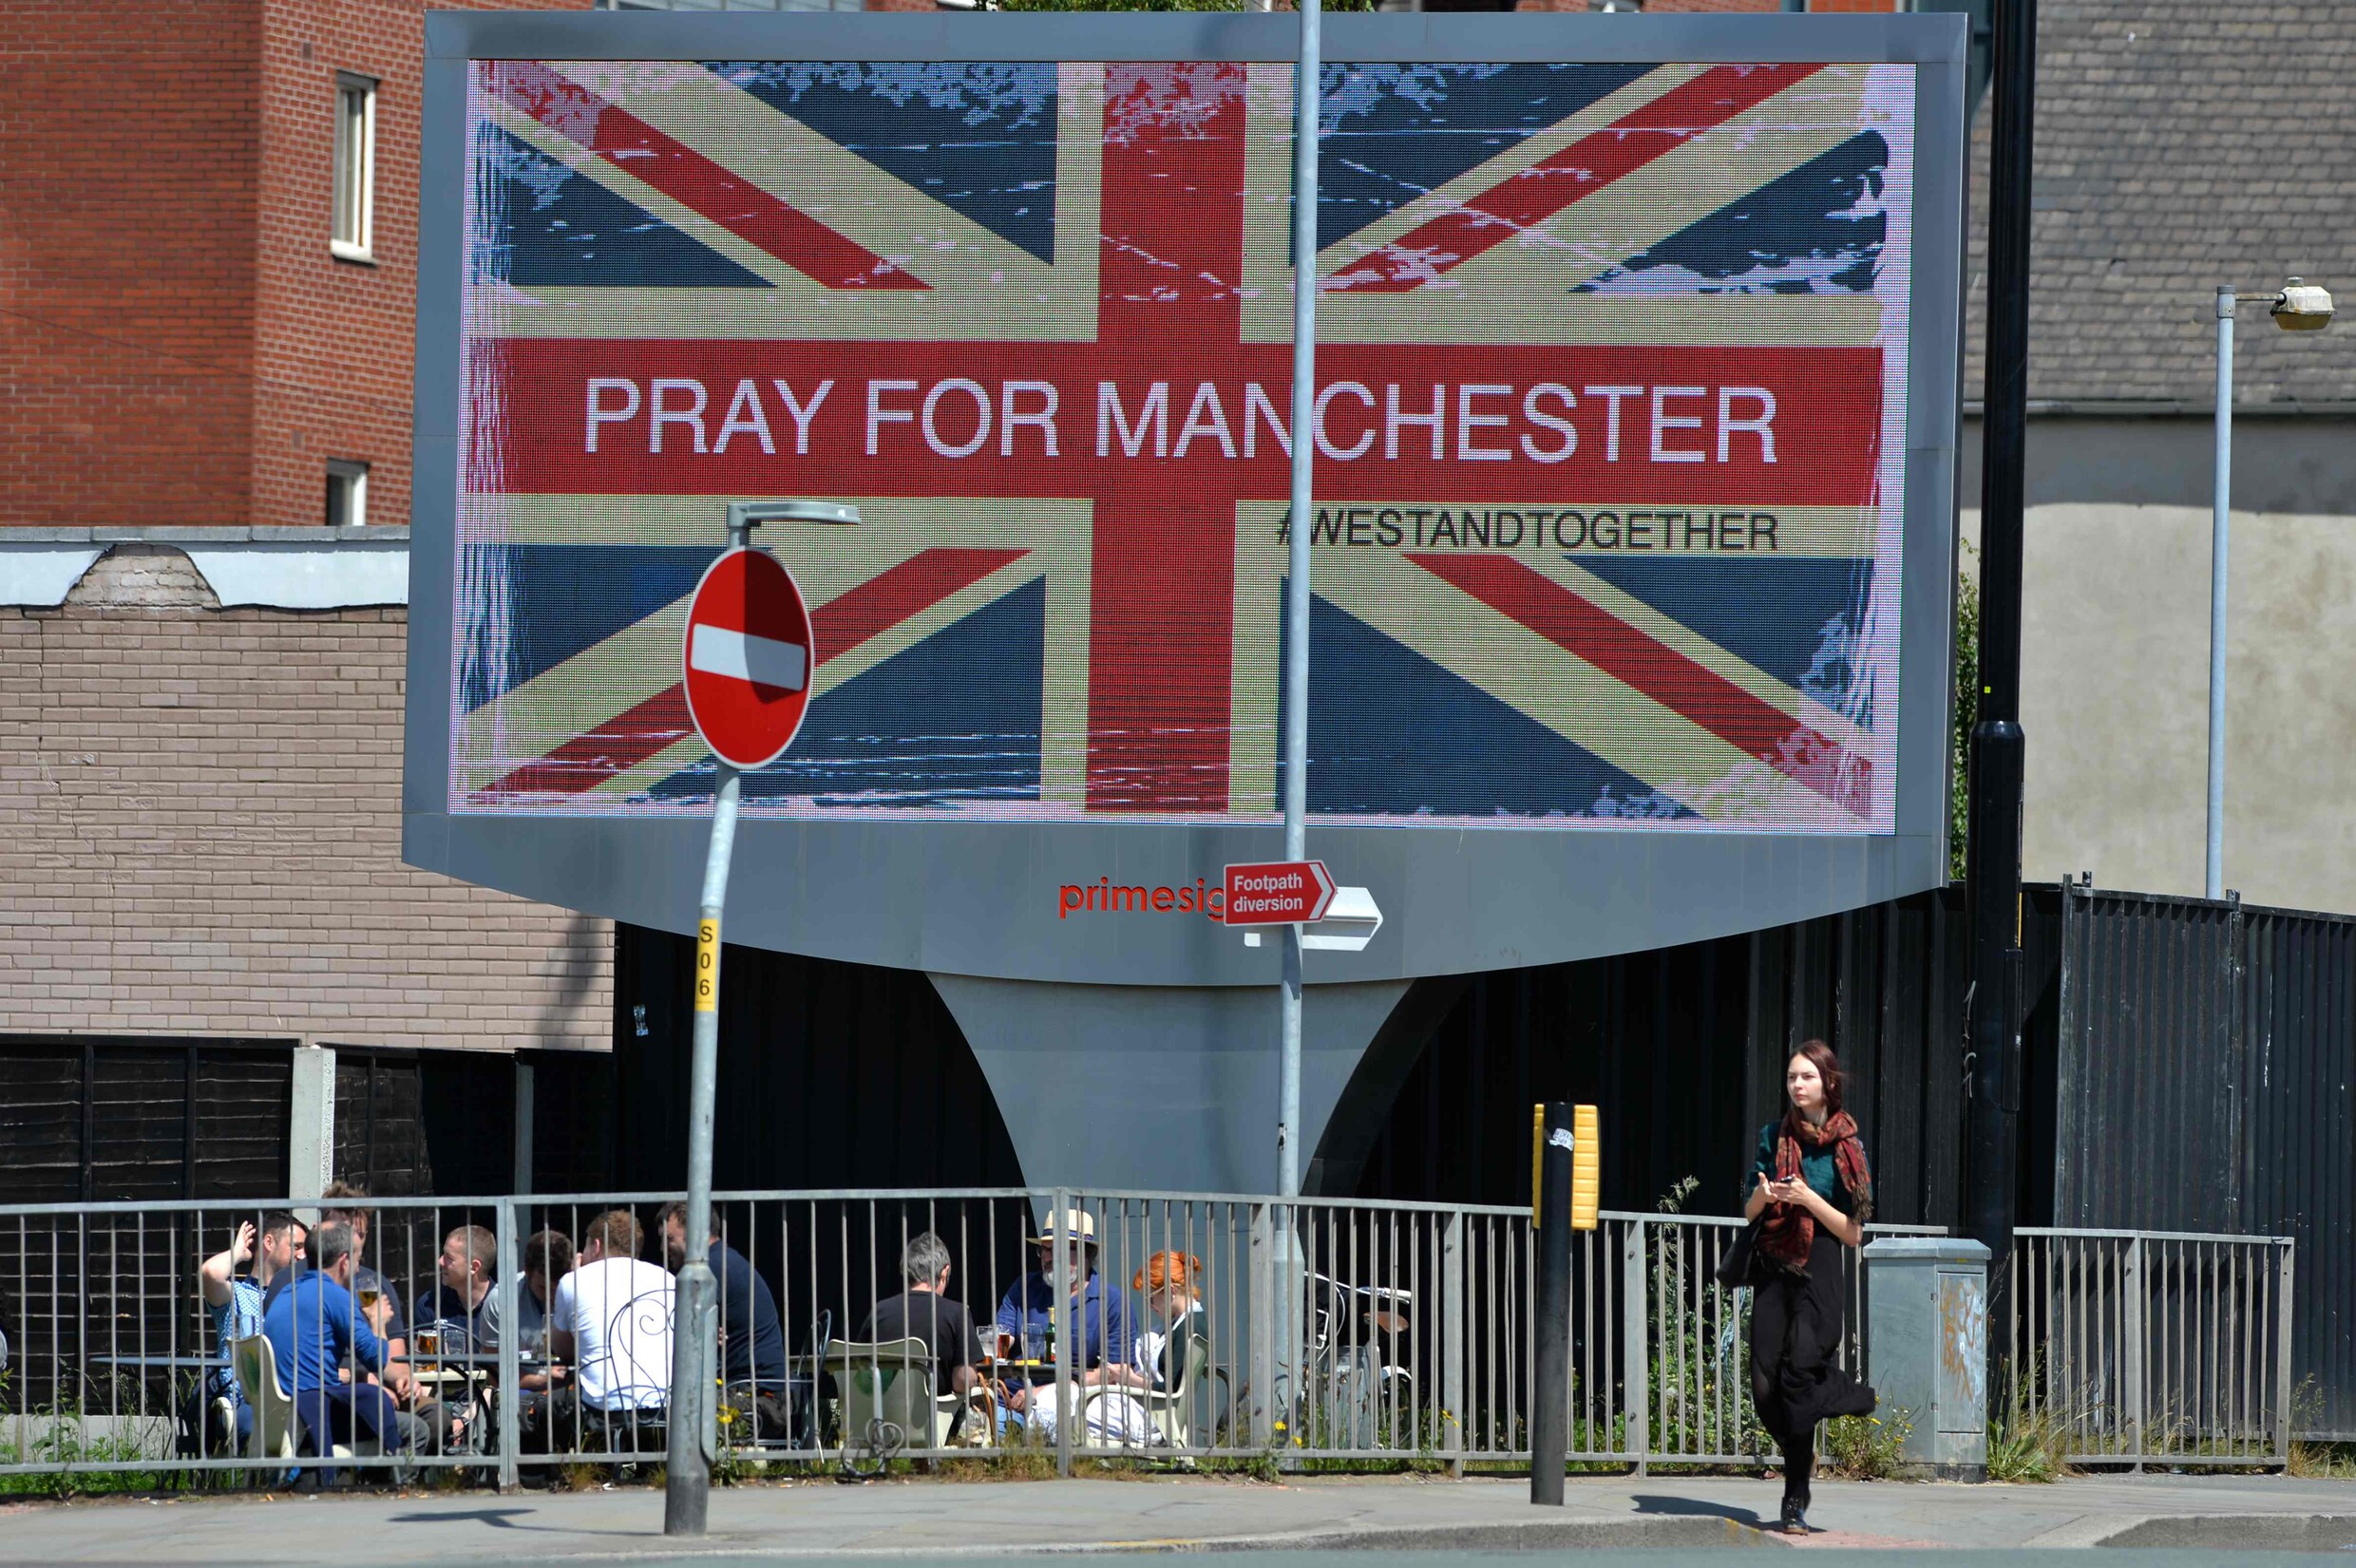 Achtjarig meisje onder 22 dodelijke slachtoffers: dit weten we over de aanslag in Manchester